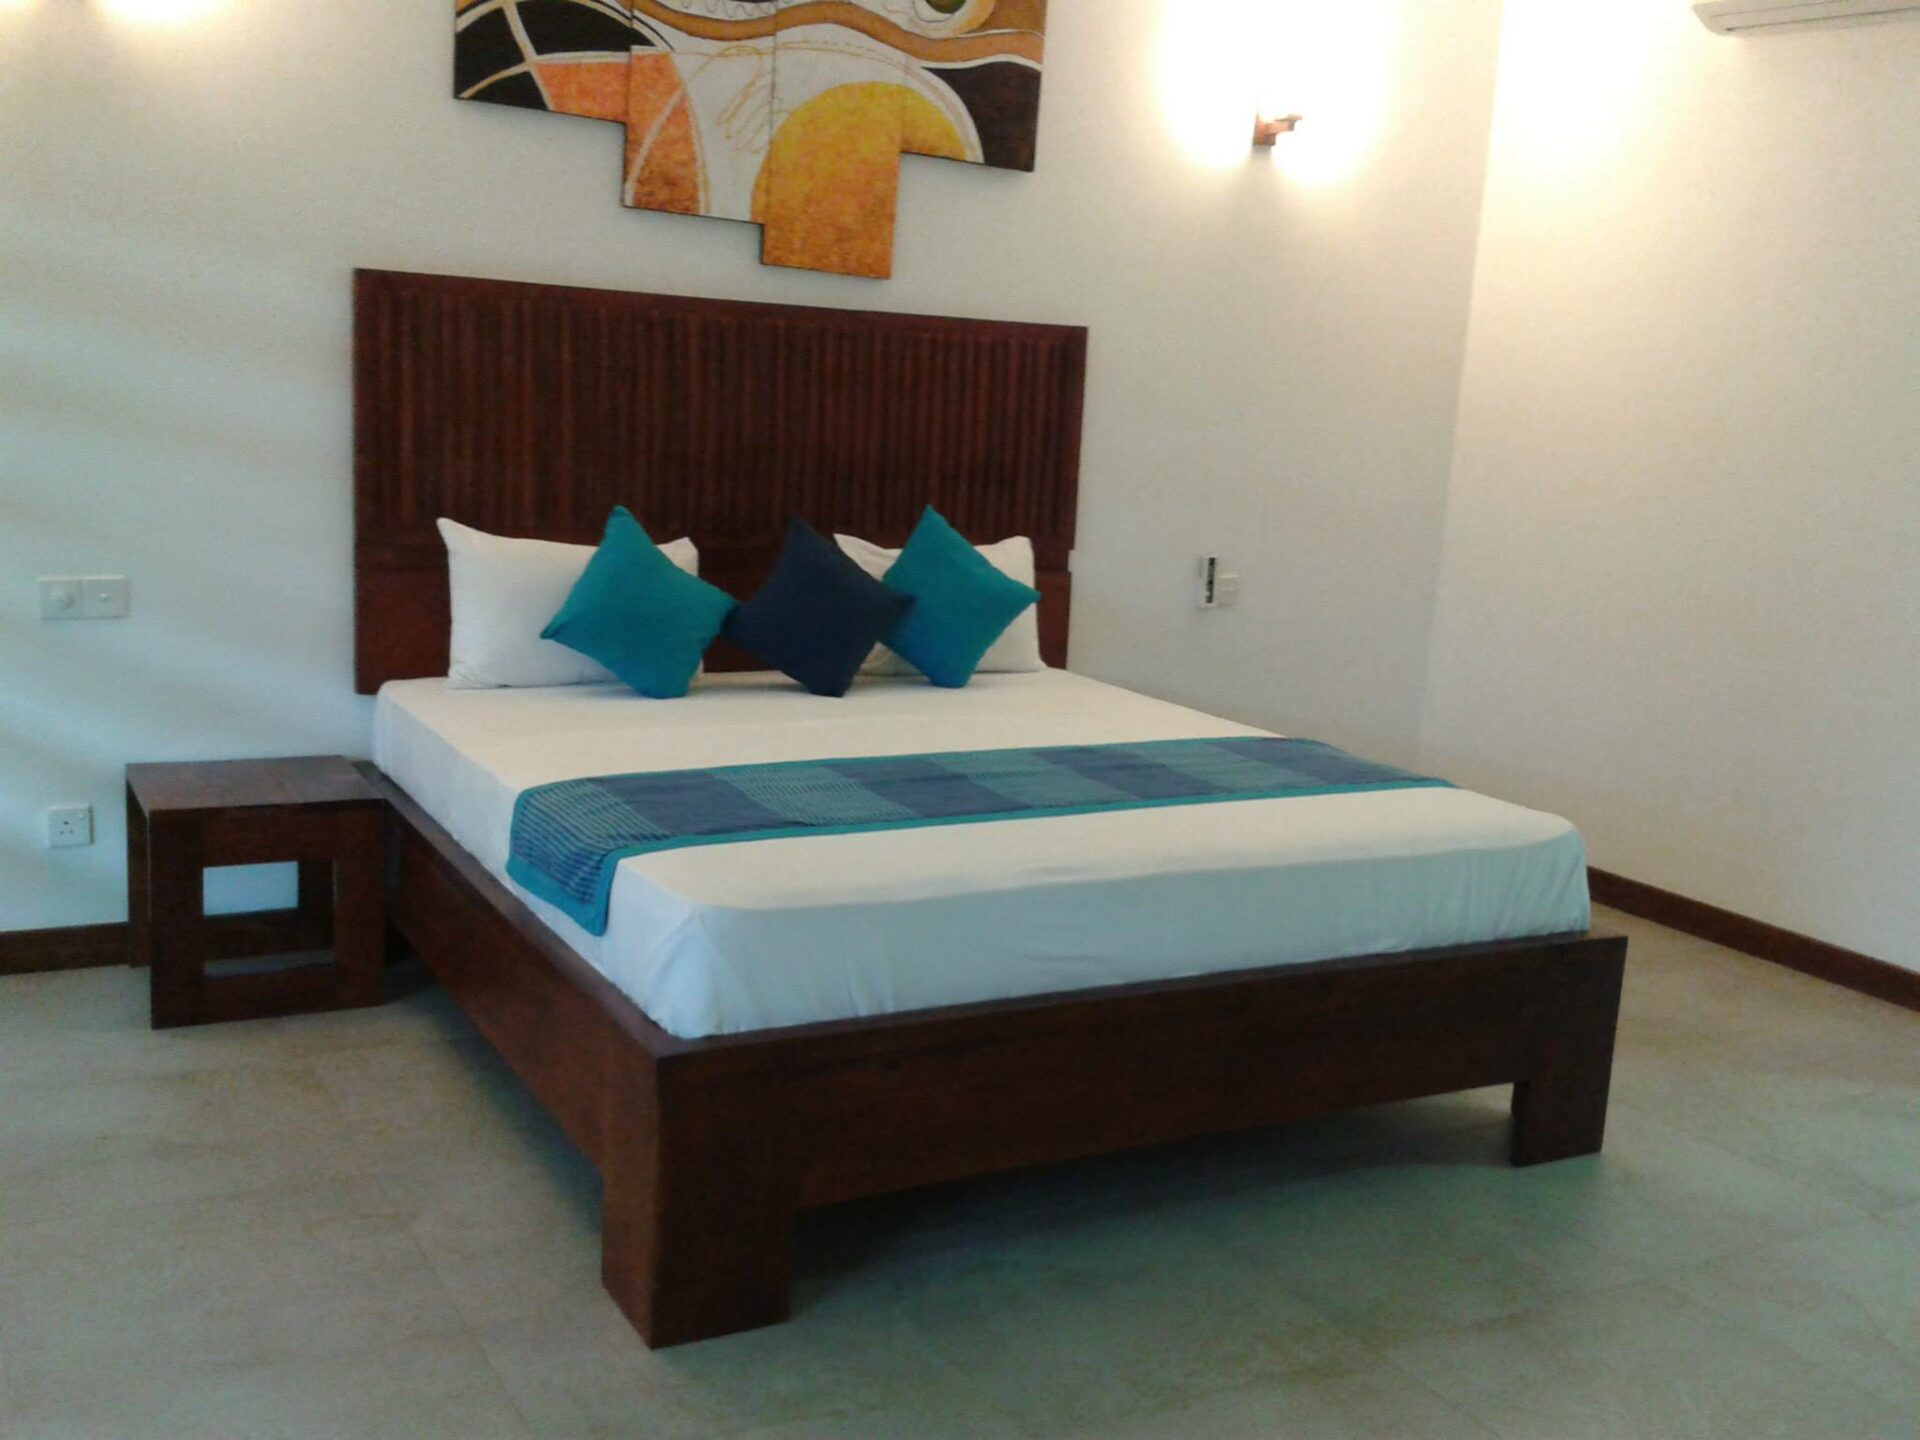 Anantamaa Hotel Sri Lanka trincomalee original asia rondreis sri lanka malediven hotelkamer3